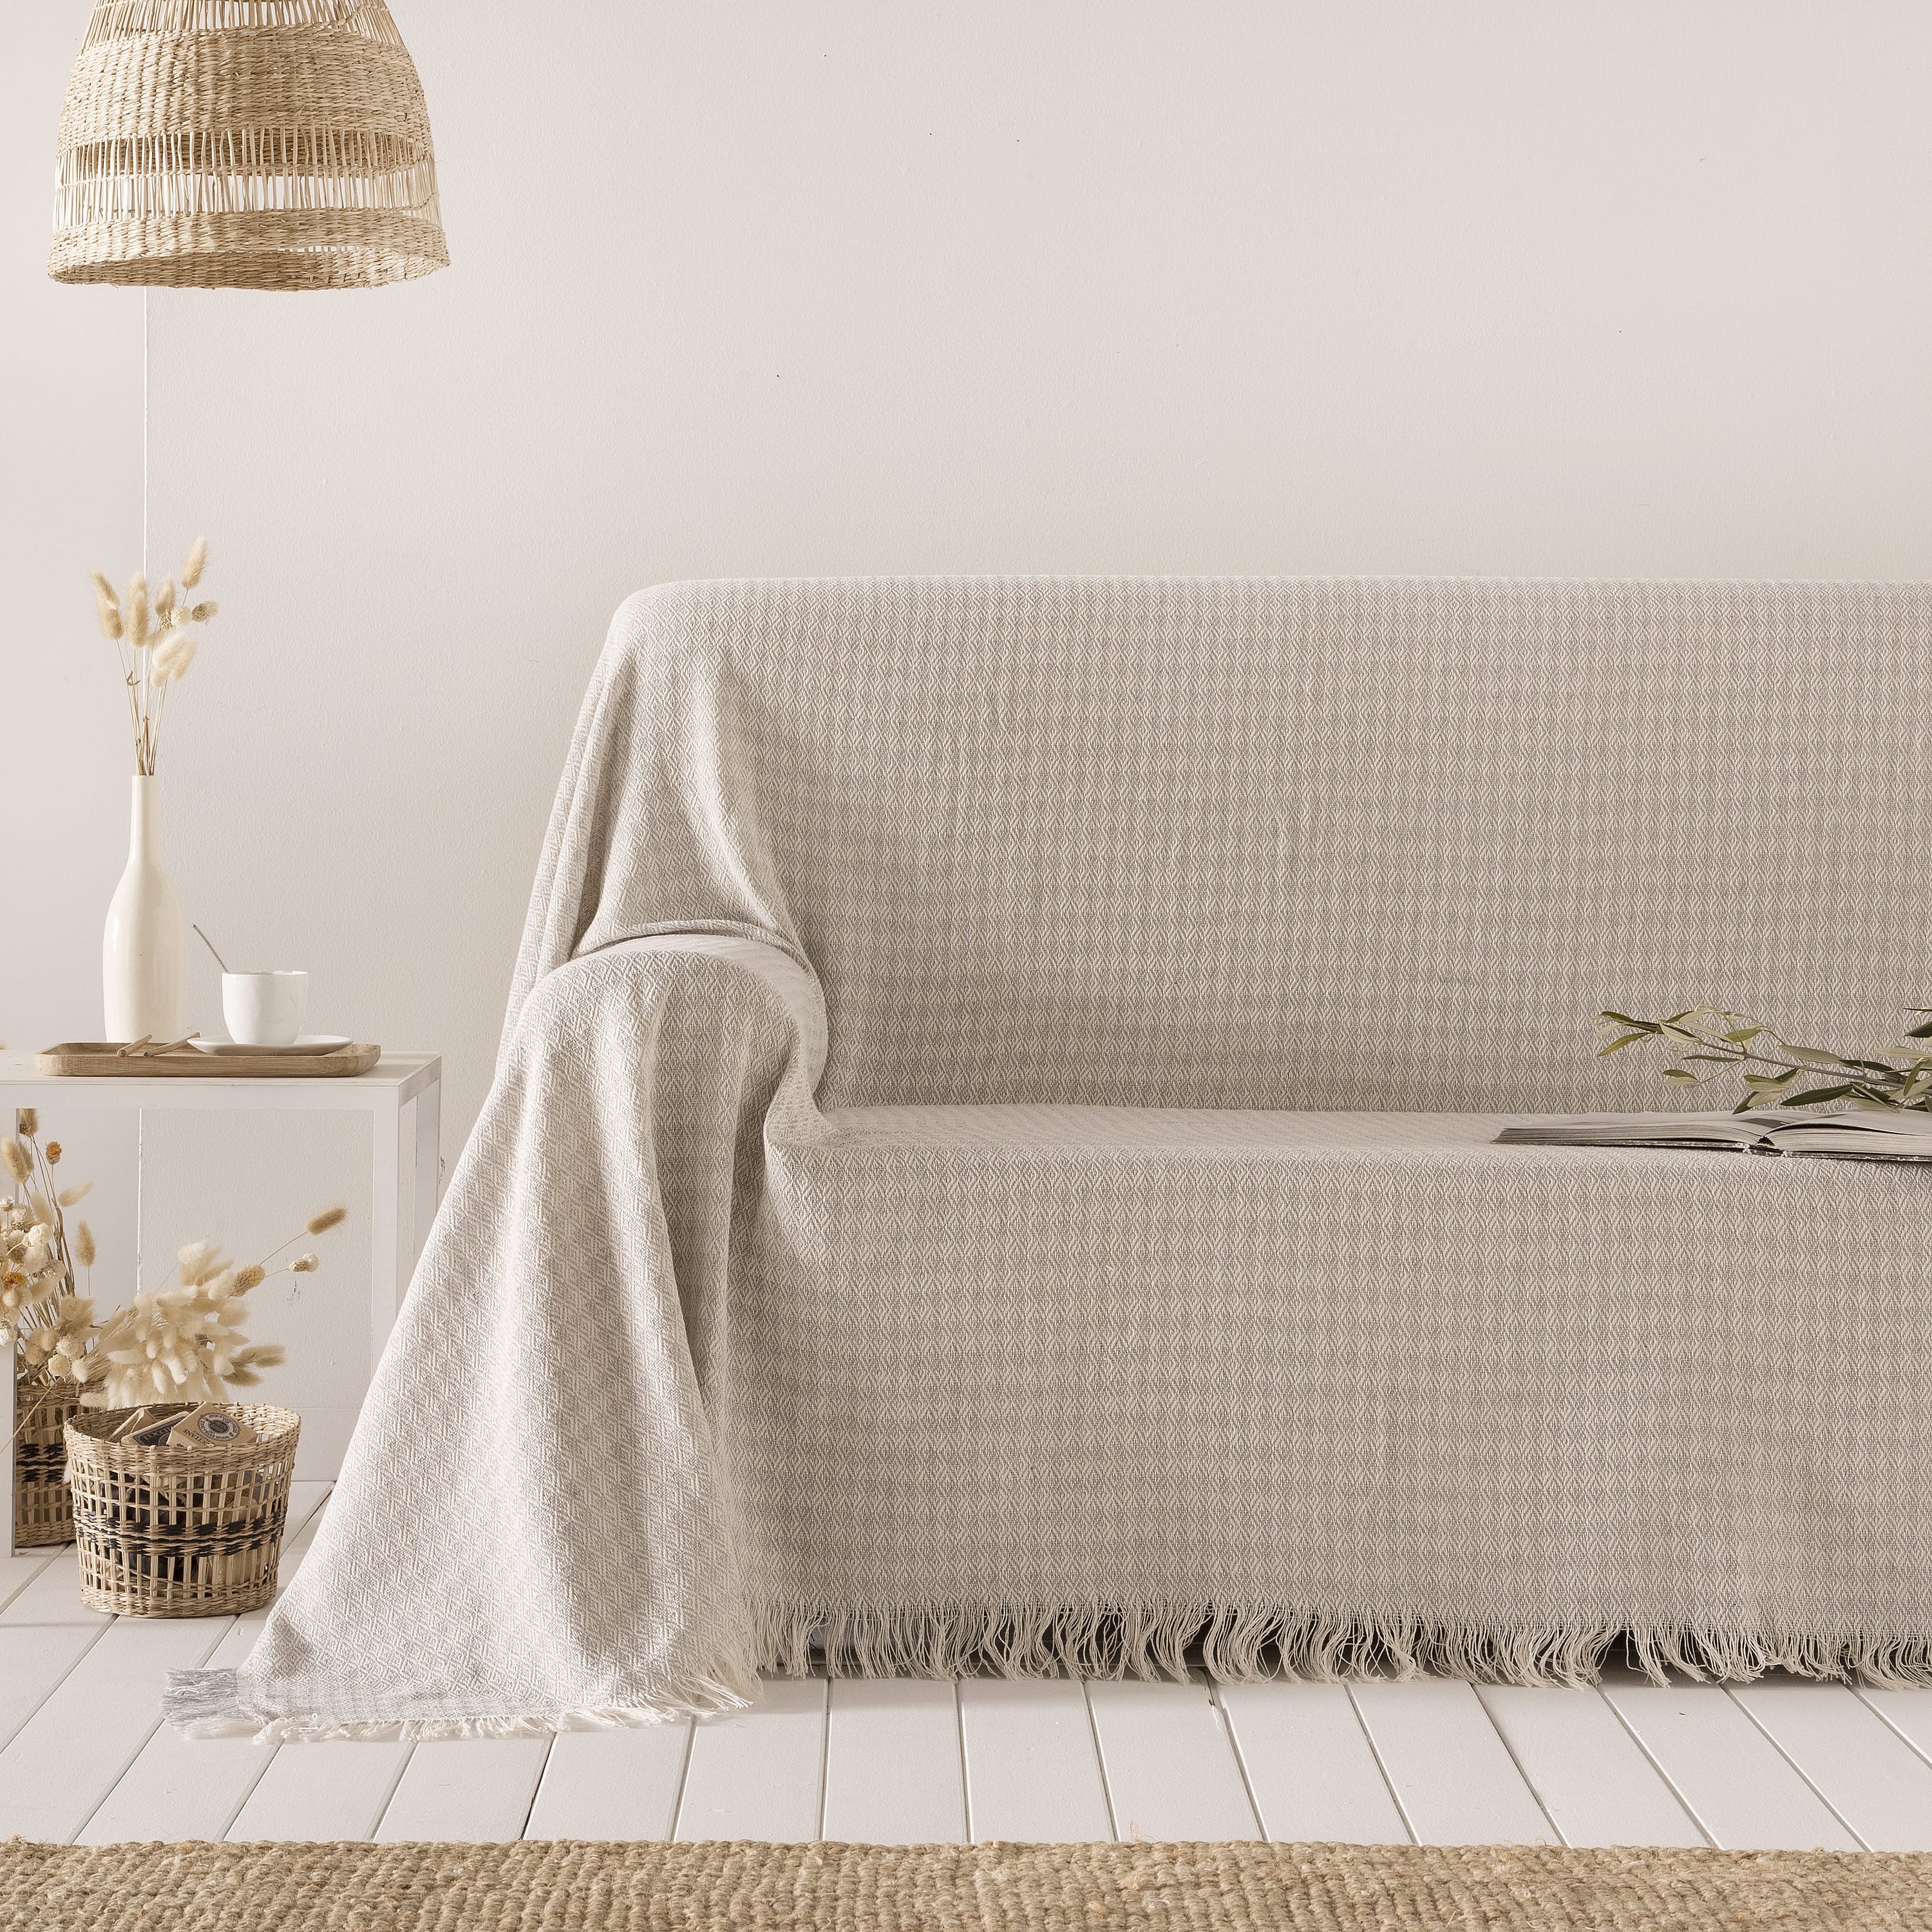 Coperta multiuso in cotone Ferd Grigio 180x260 cm, plaid per letto,  Copriletto, copridivano, foulard per divano, copertura per divano